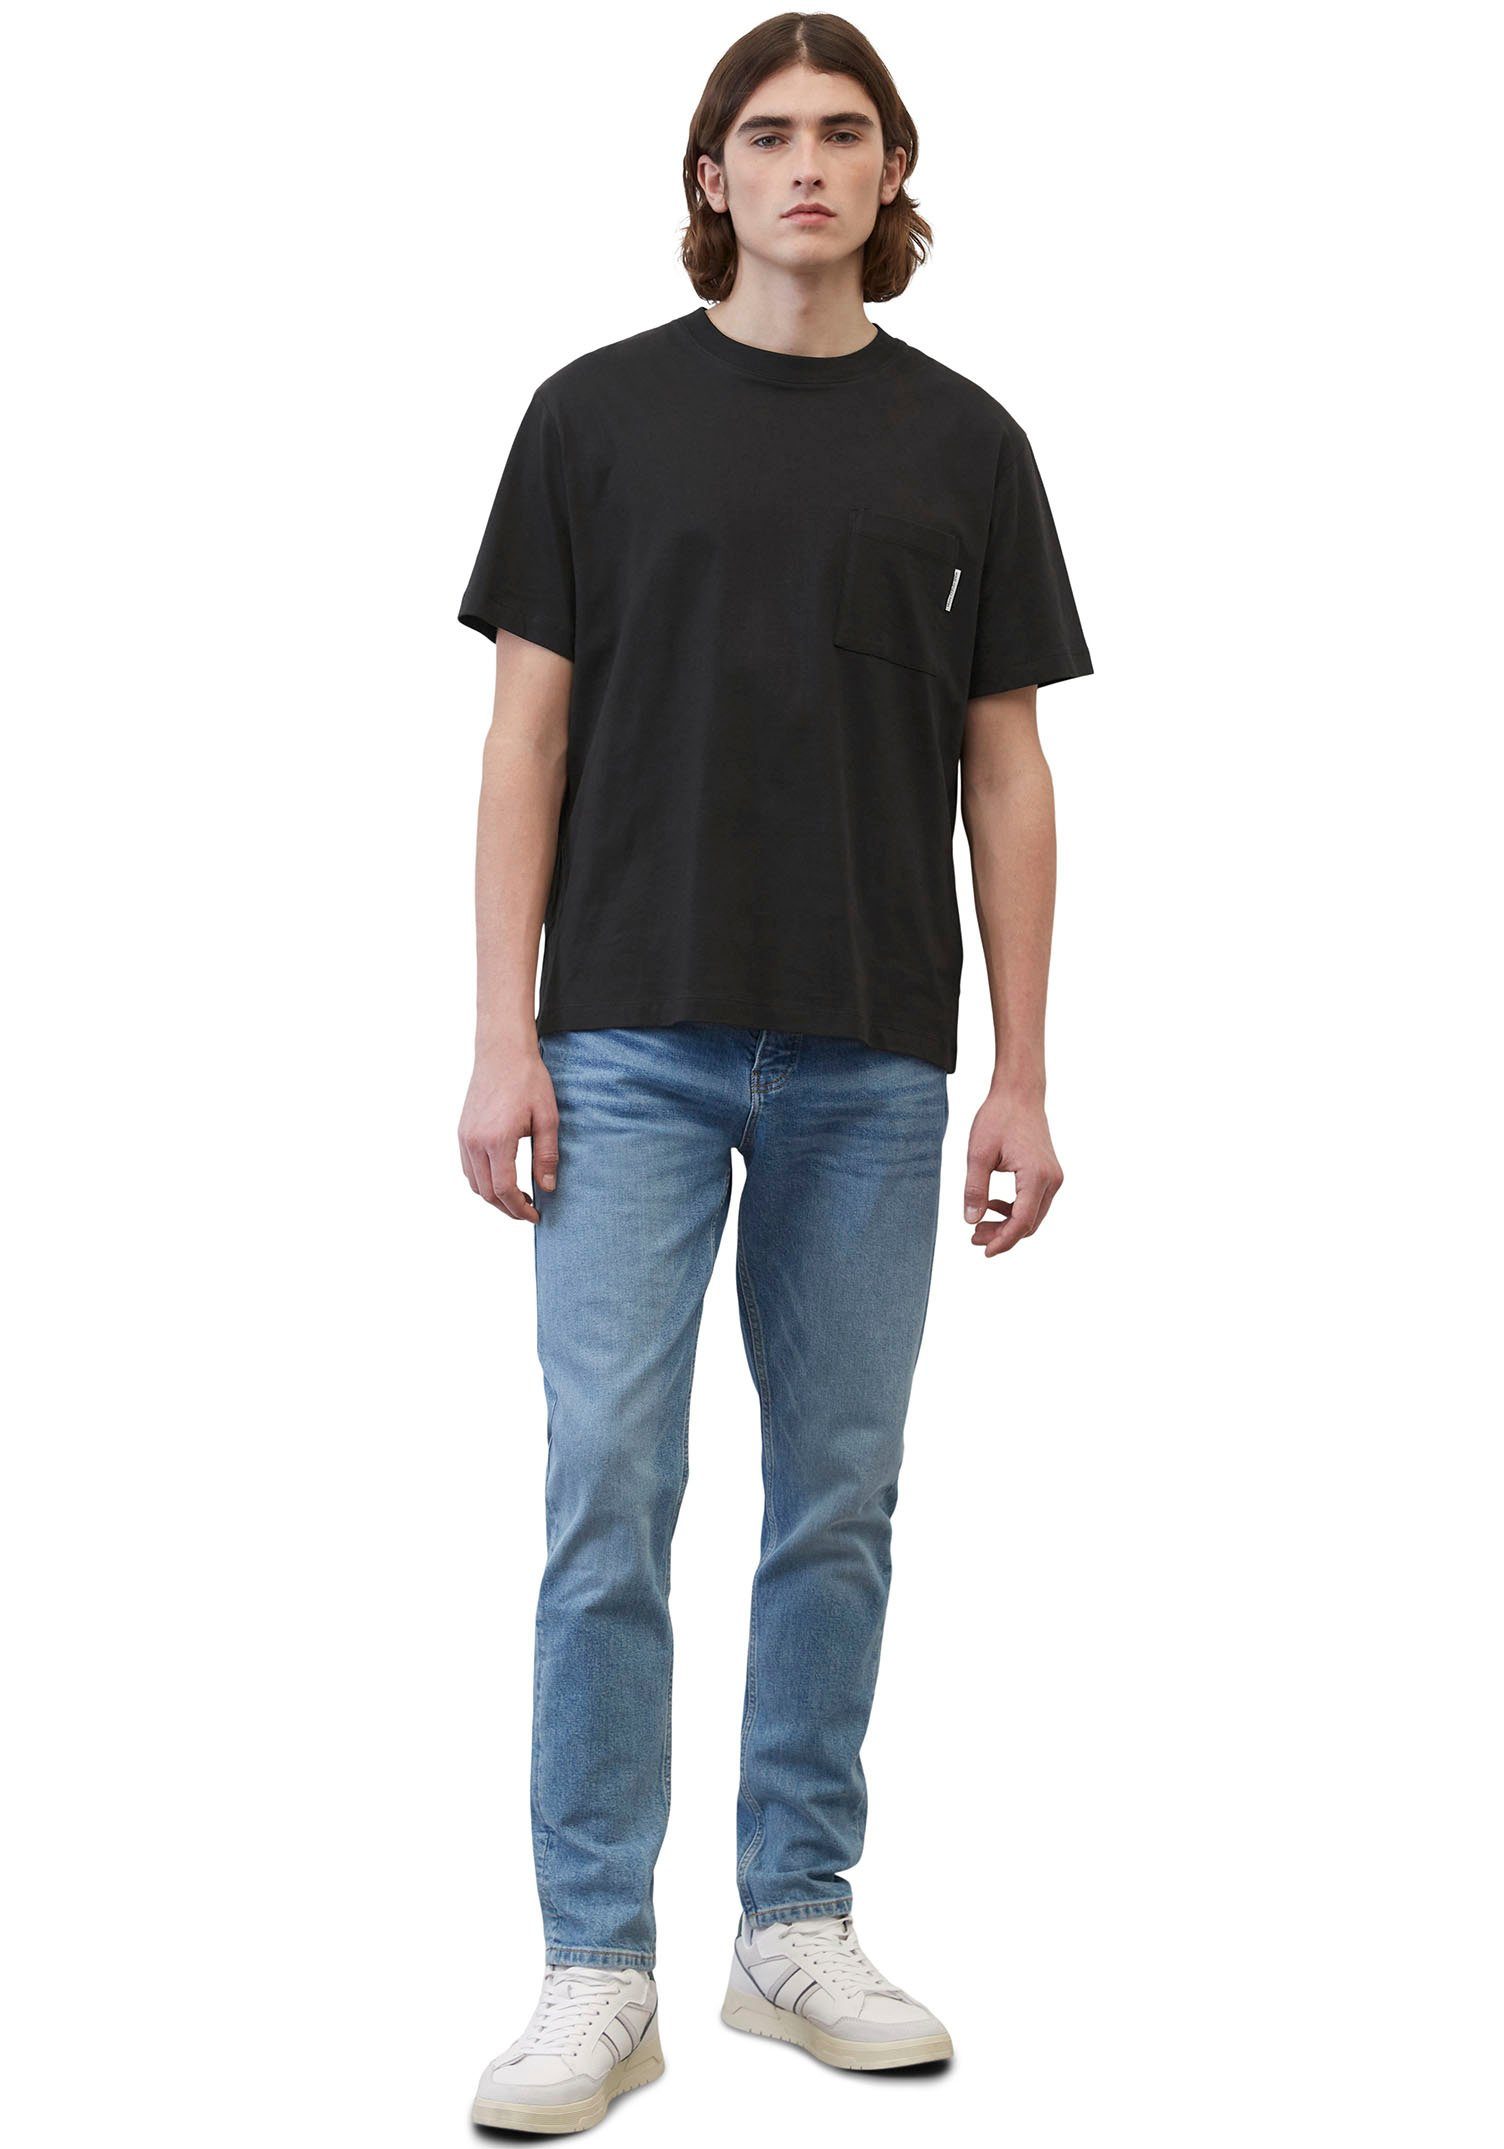 Brusttasche mit Marc aufgesetzter T-Shirt DENIM schwarz O'Polo